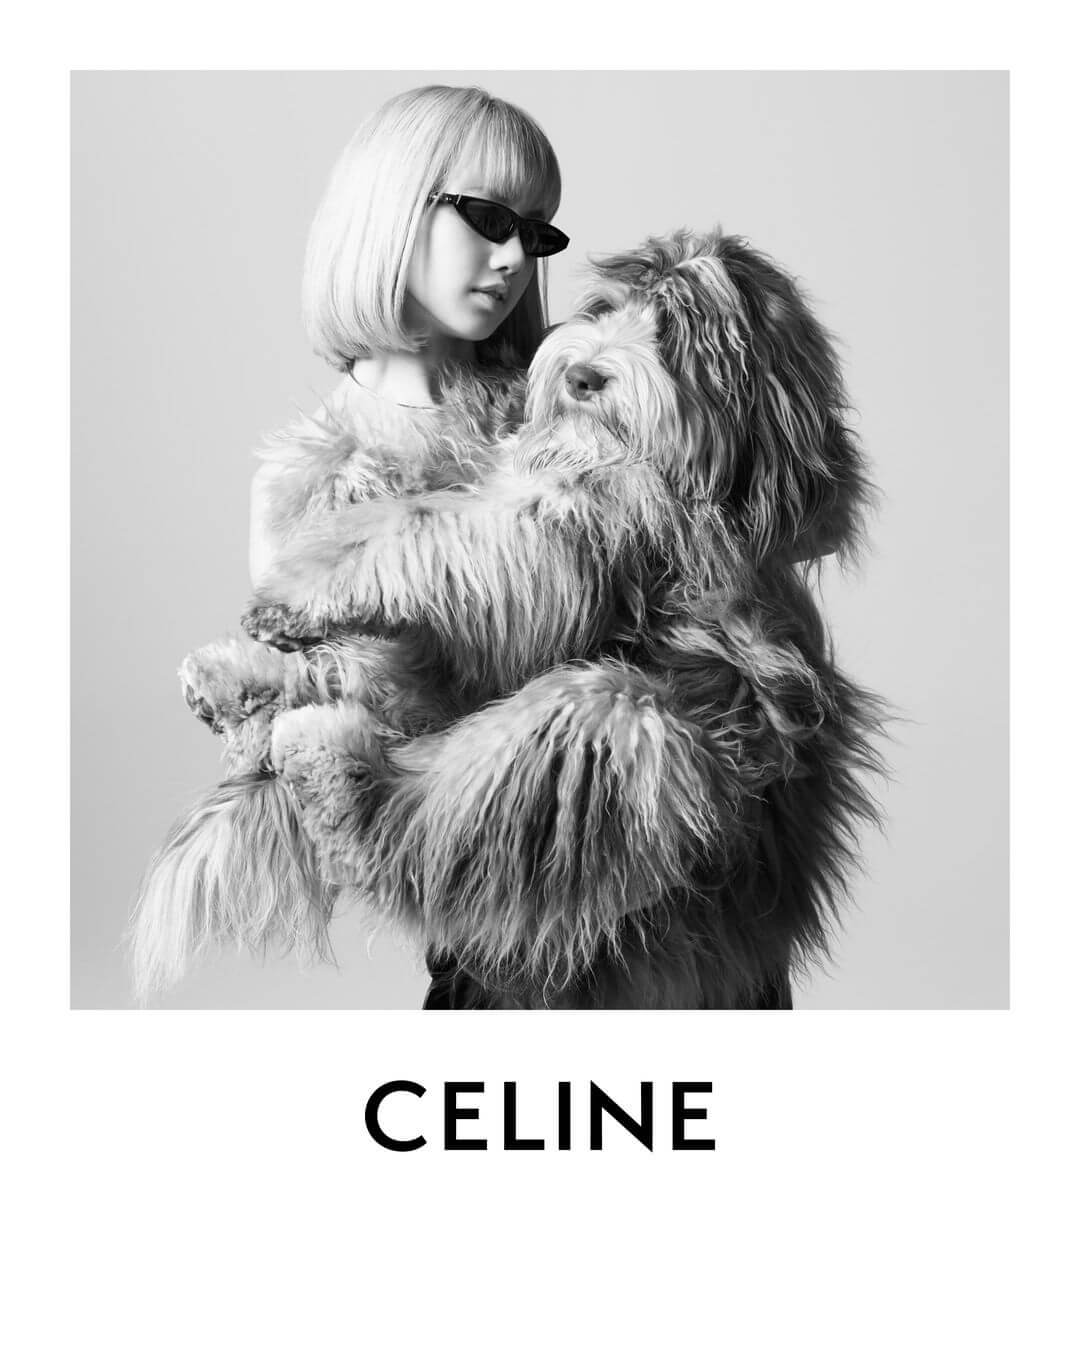 Celineâs Dog-Friendly Campaign Features Lisa From BlackPink